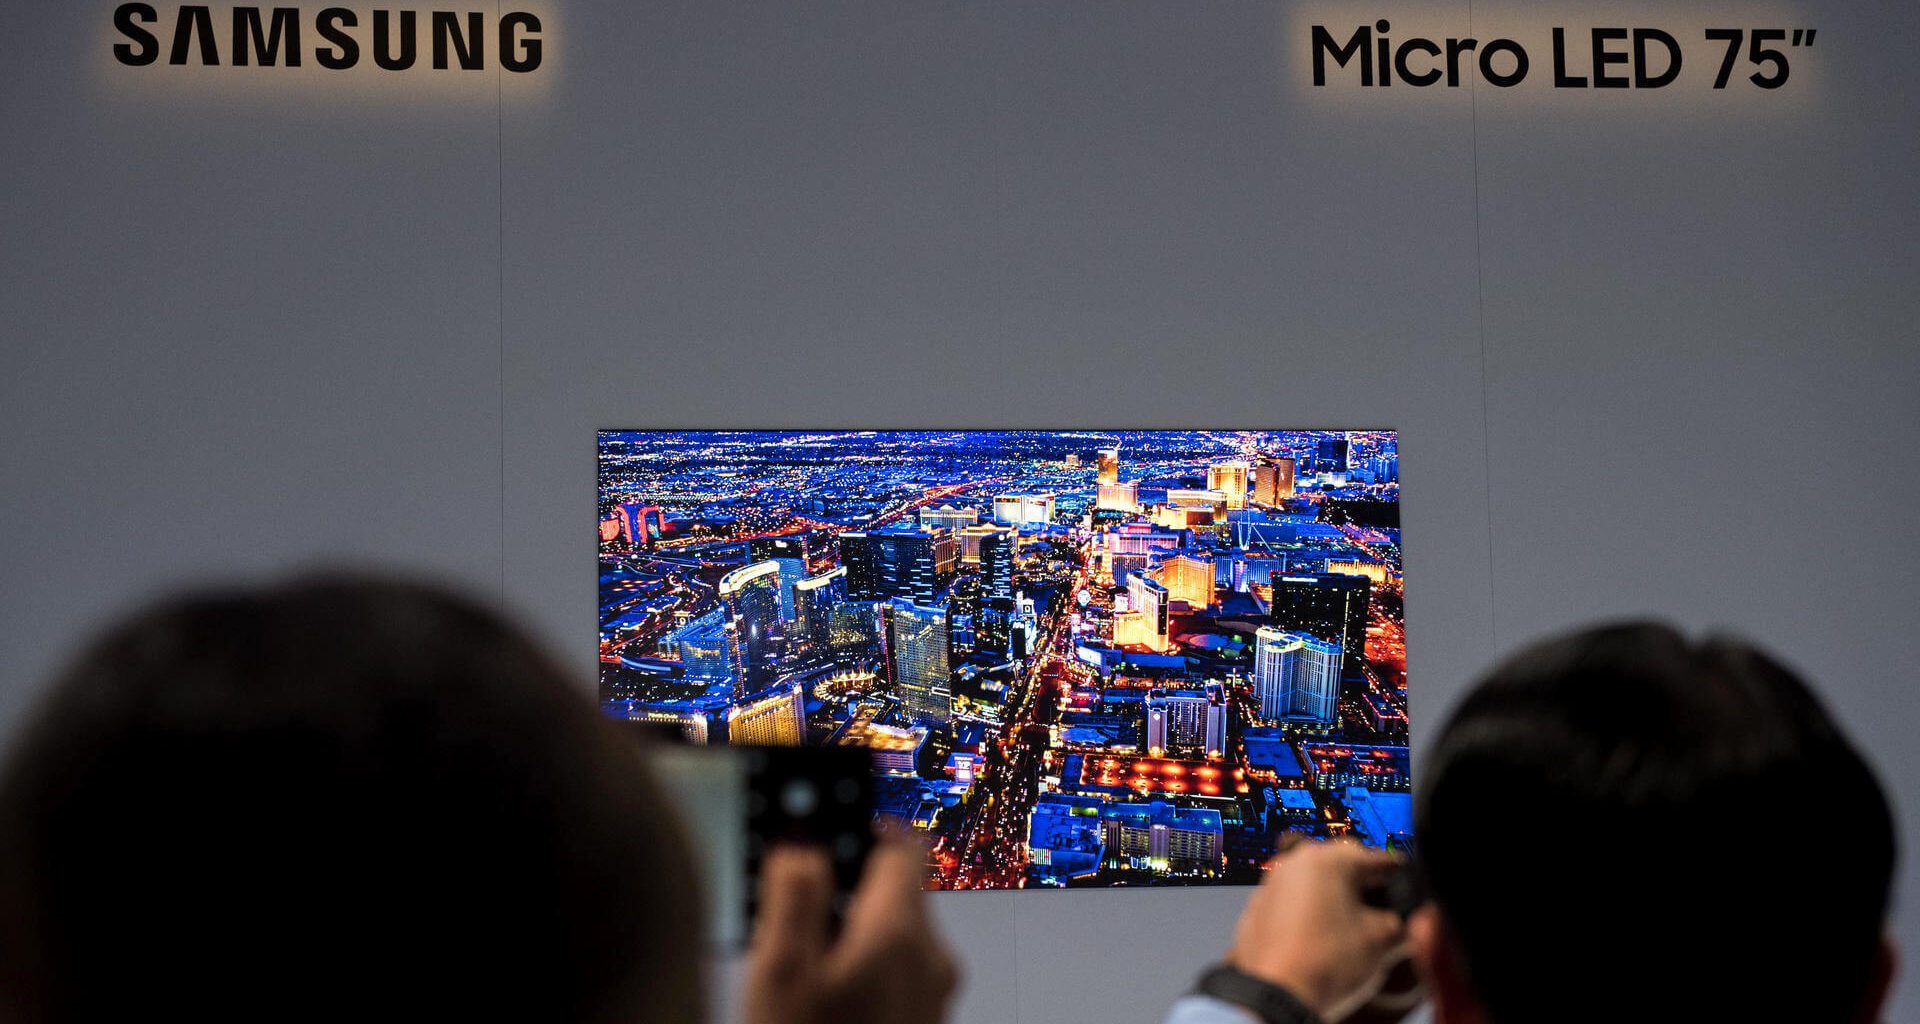 Samsungs micro led technik schaerfere tv geraete in aussicht